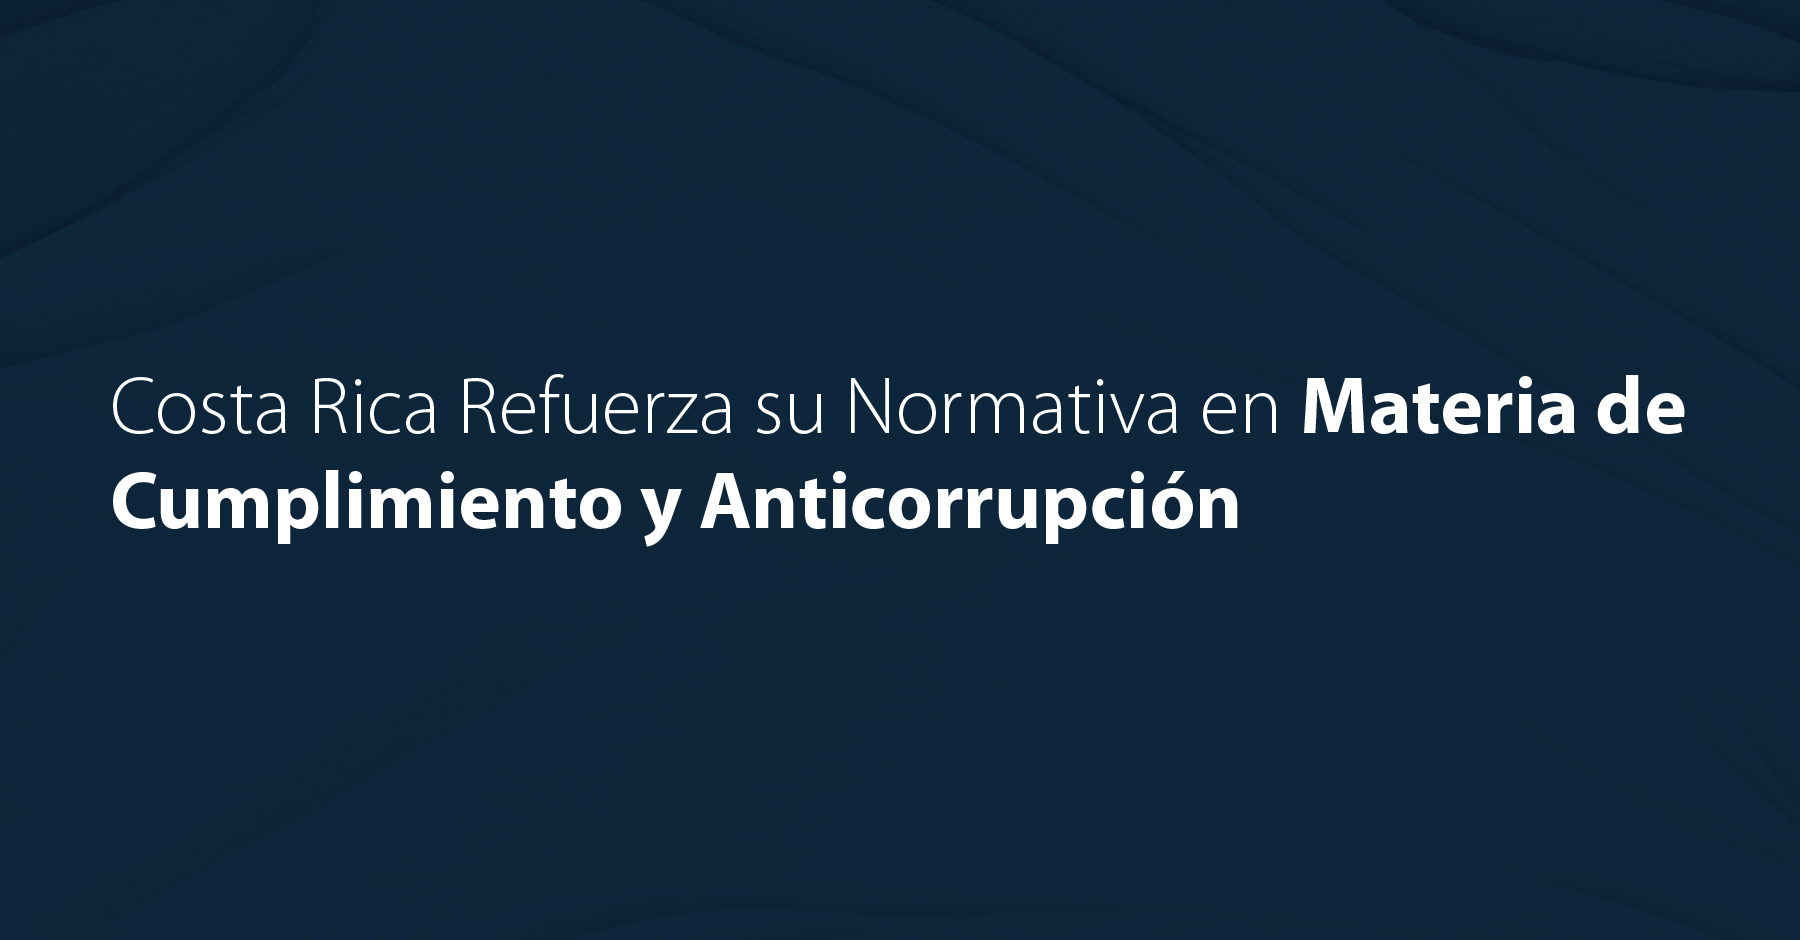 Costa Rica Refuerza su Normativa en Materia de Cumplimiento y Anticorrupción